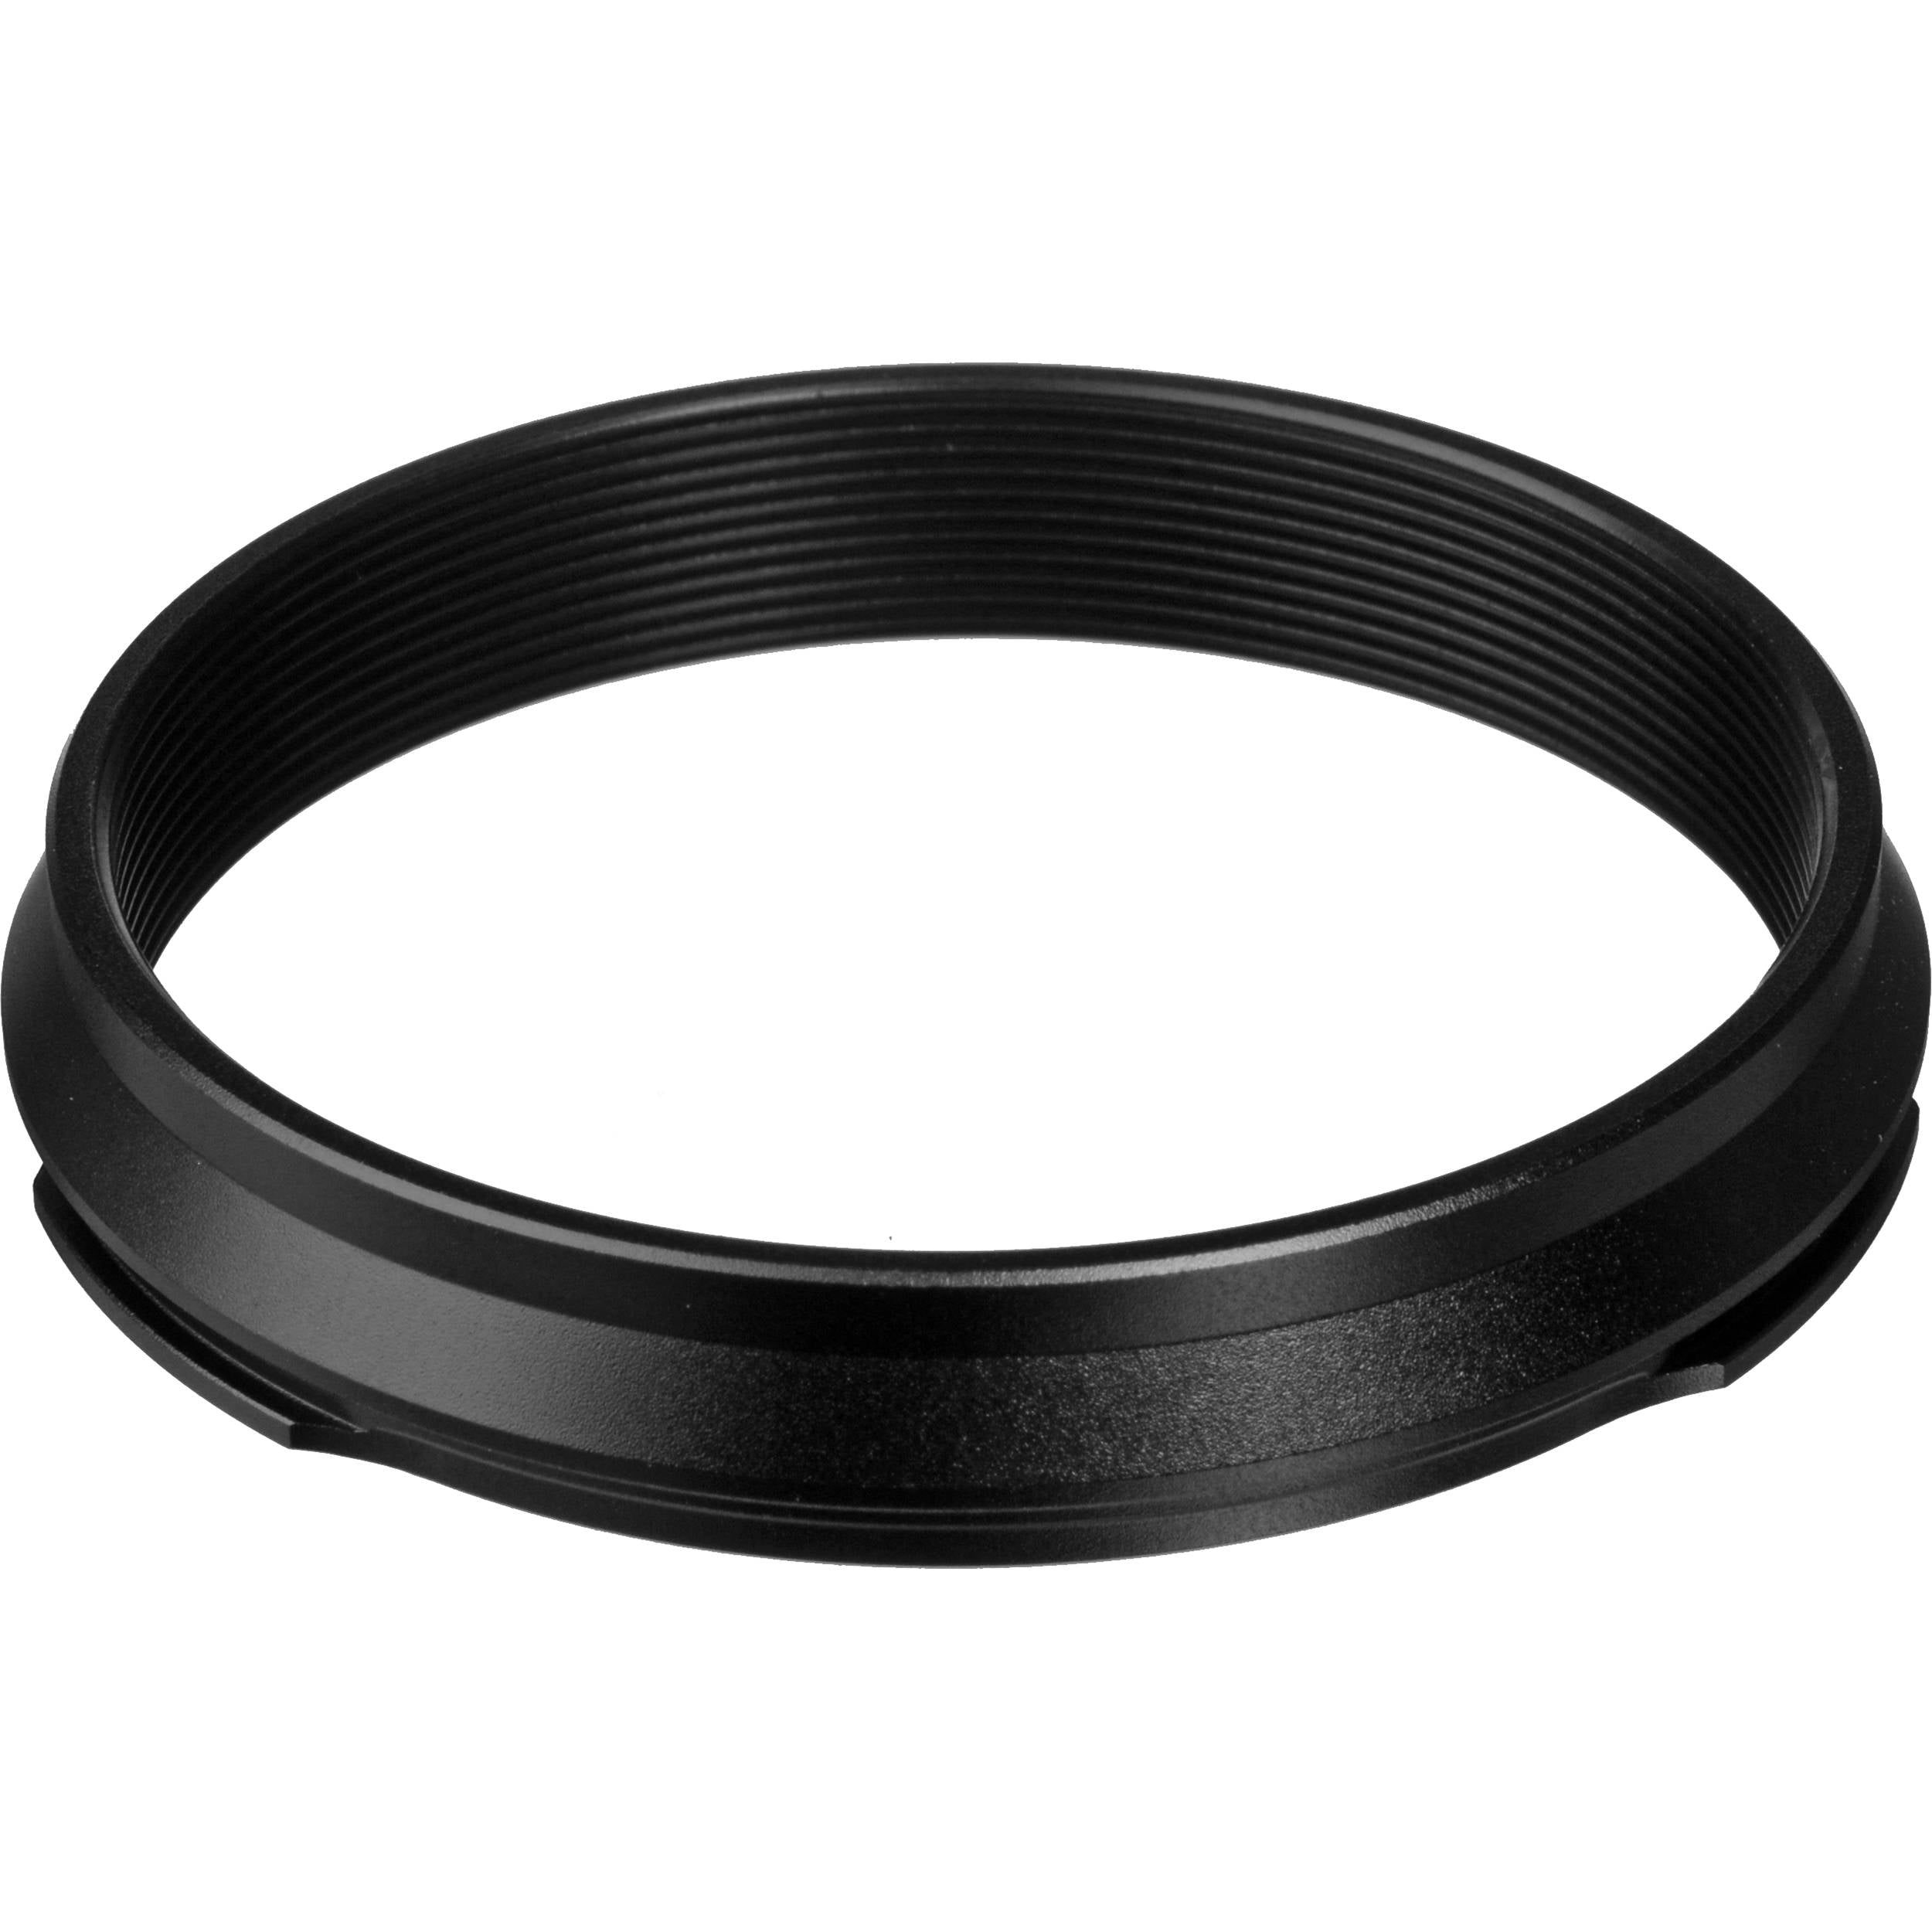 Fujifilm X100 Adapter Ring AR-X100, Black